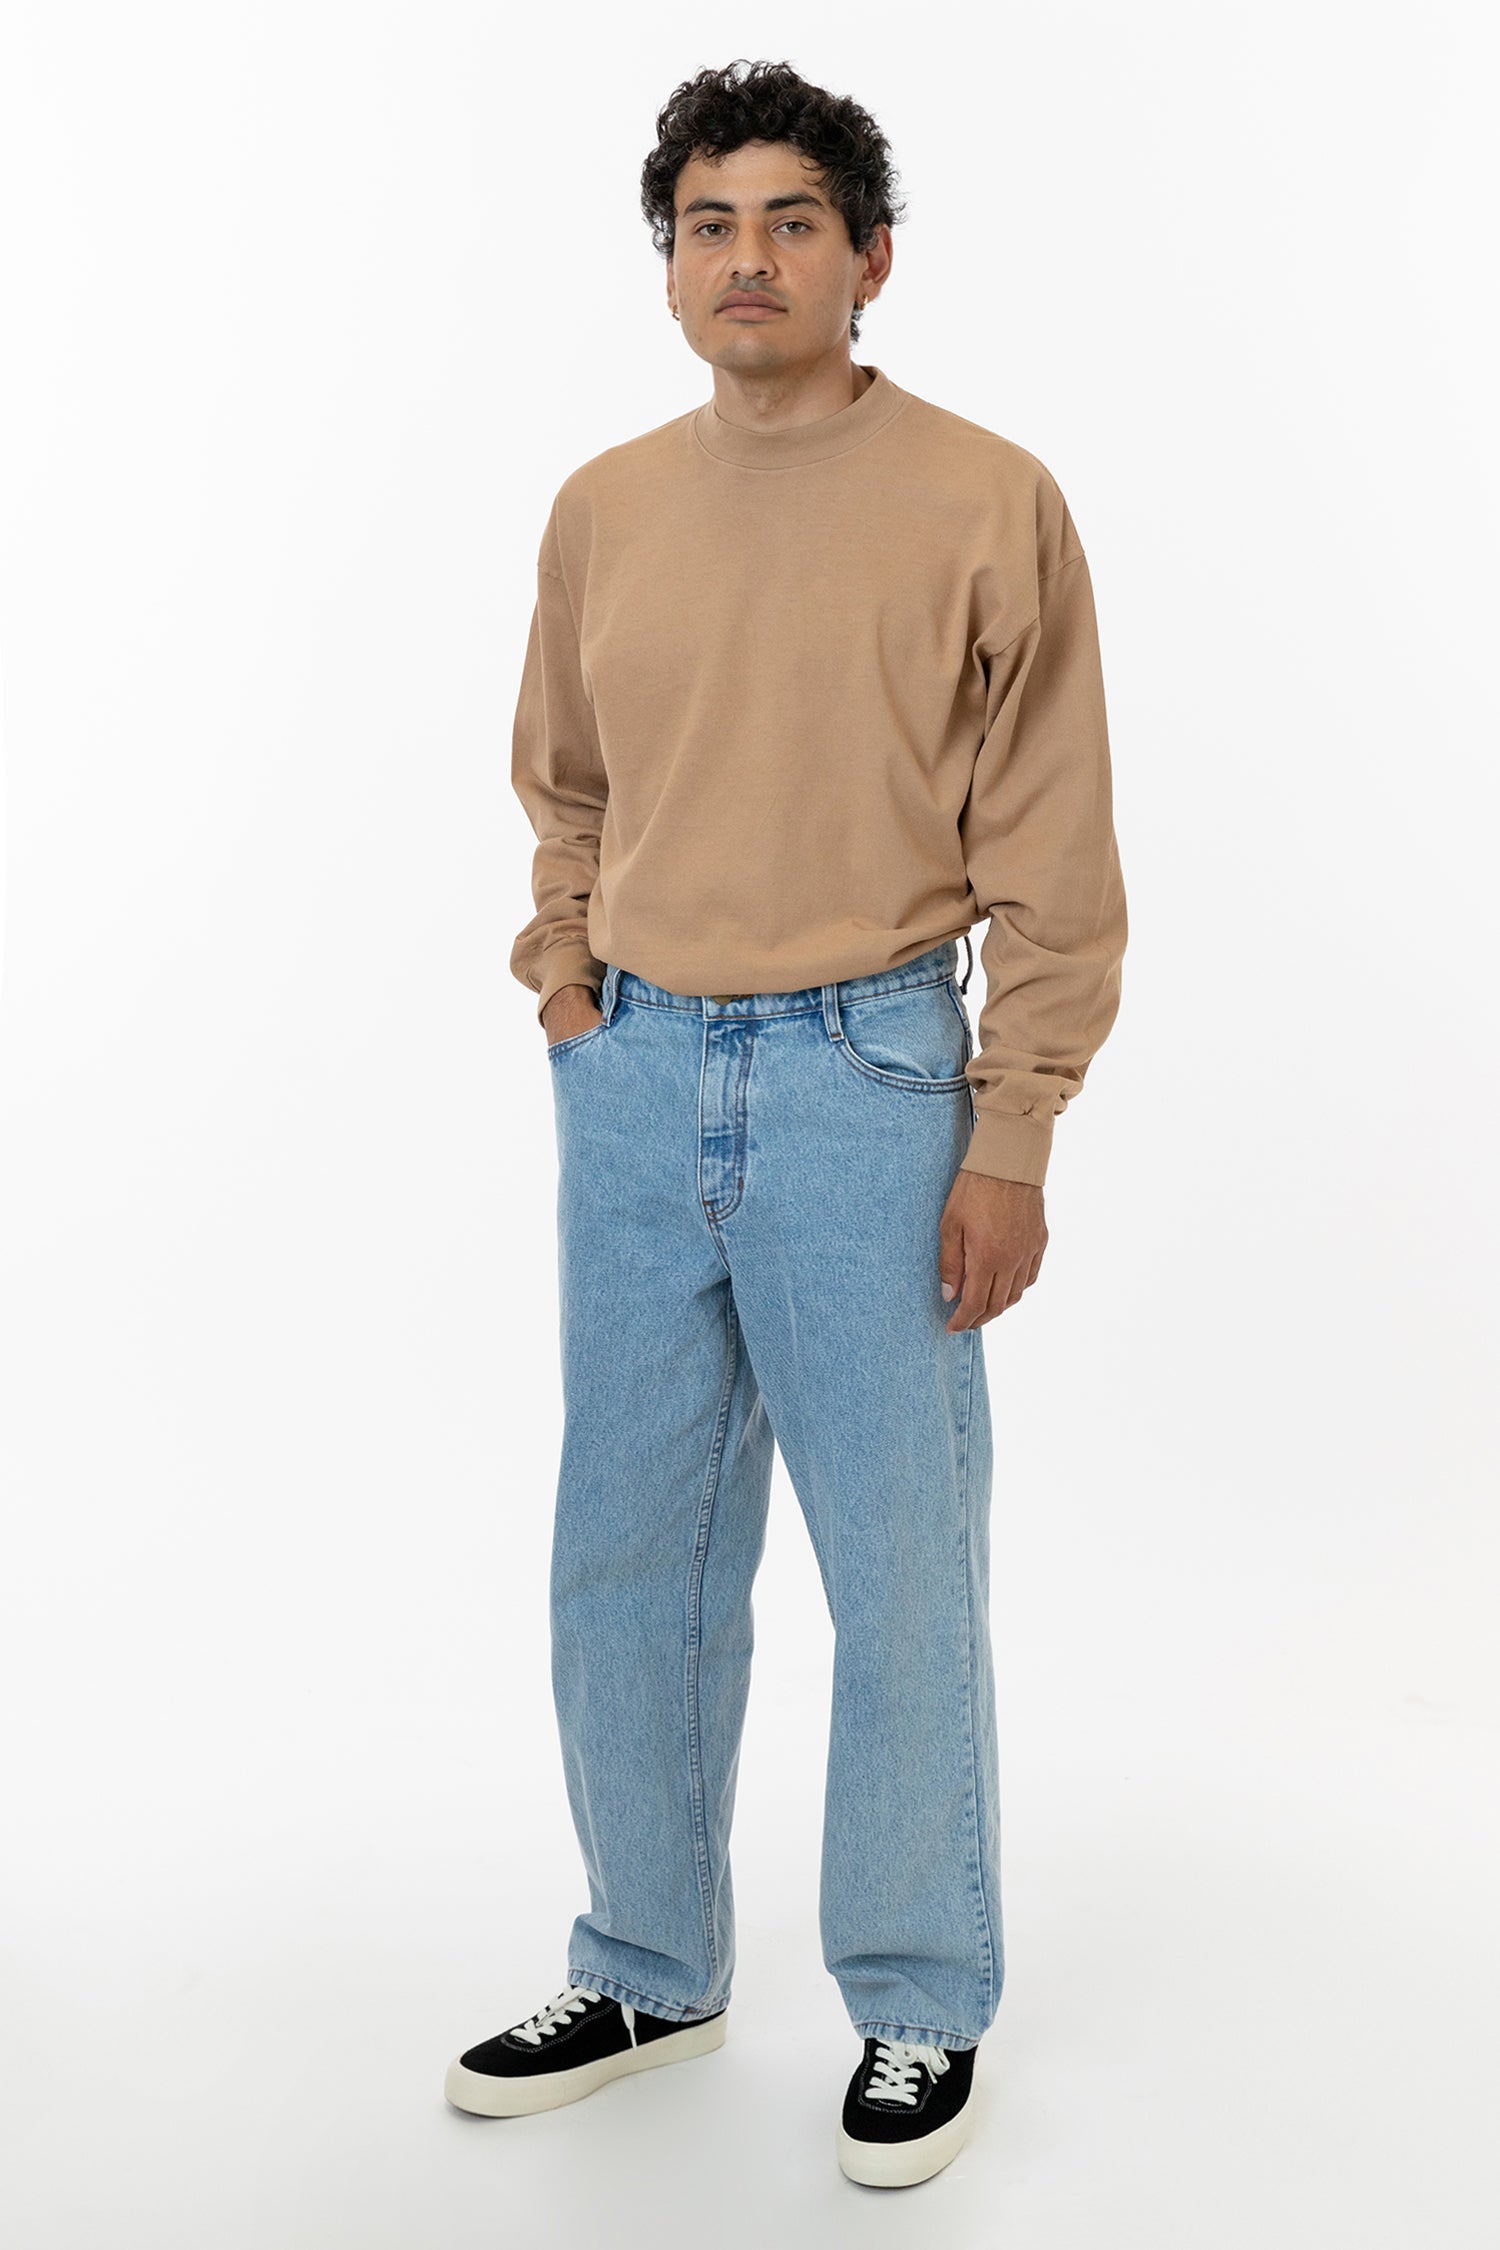 RDNM410 - Men's Loose Fit Jeans